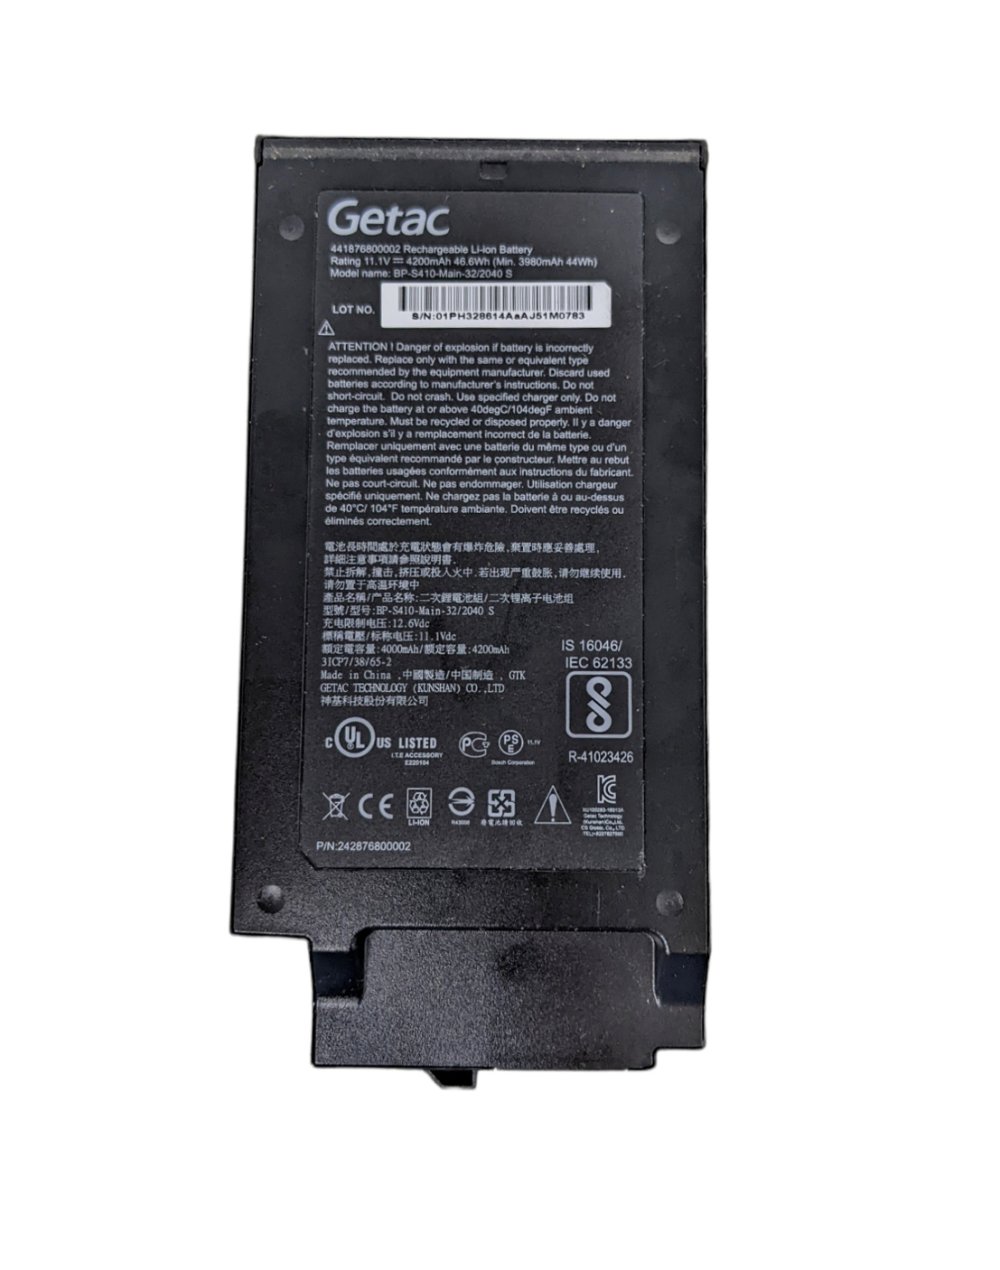 Accu Batterij Getac 441876800003 4200mAh 46.6Wh